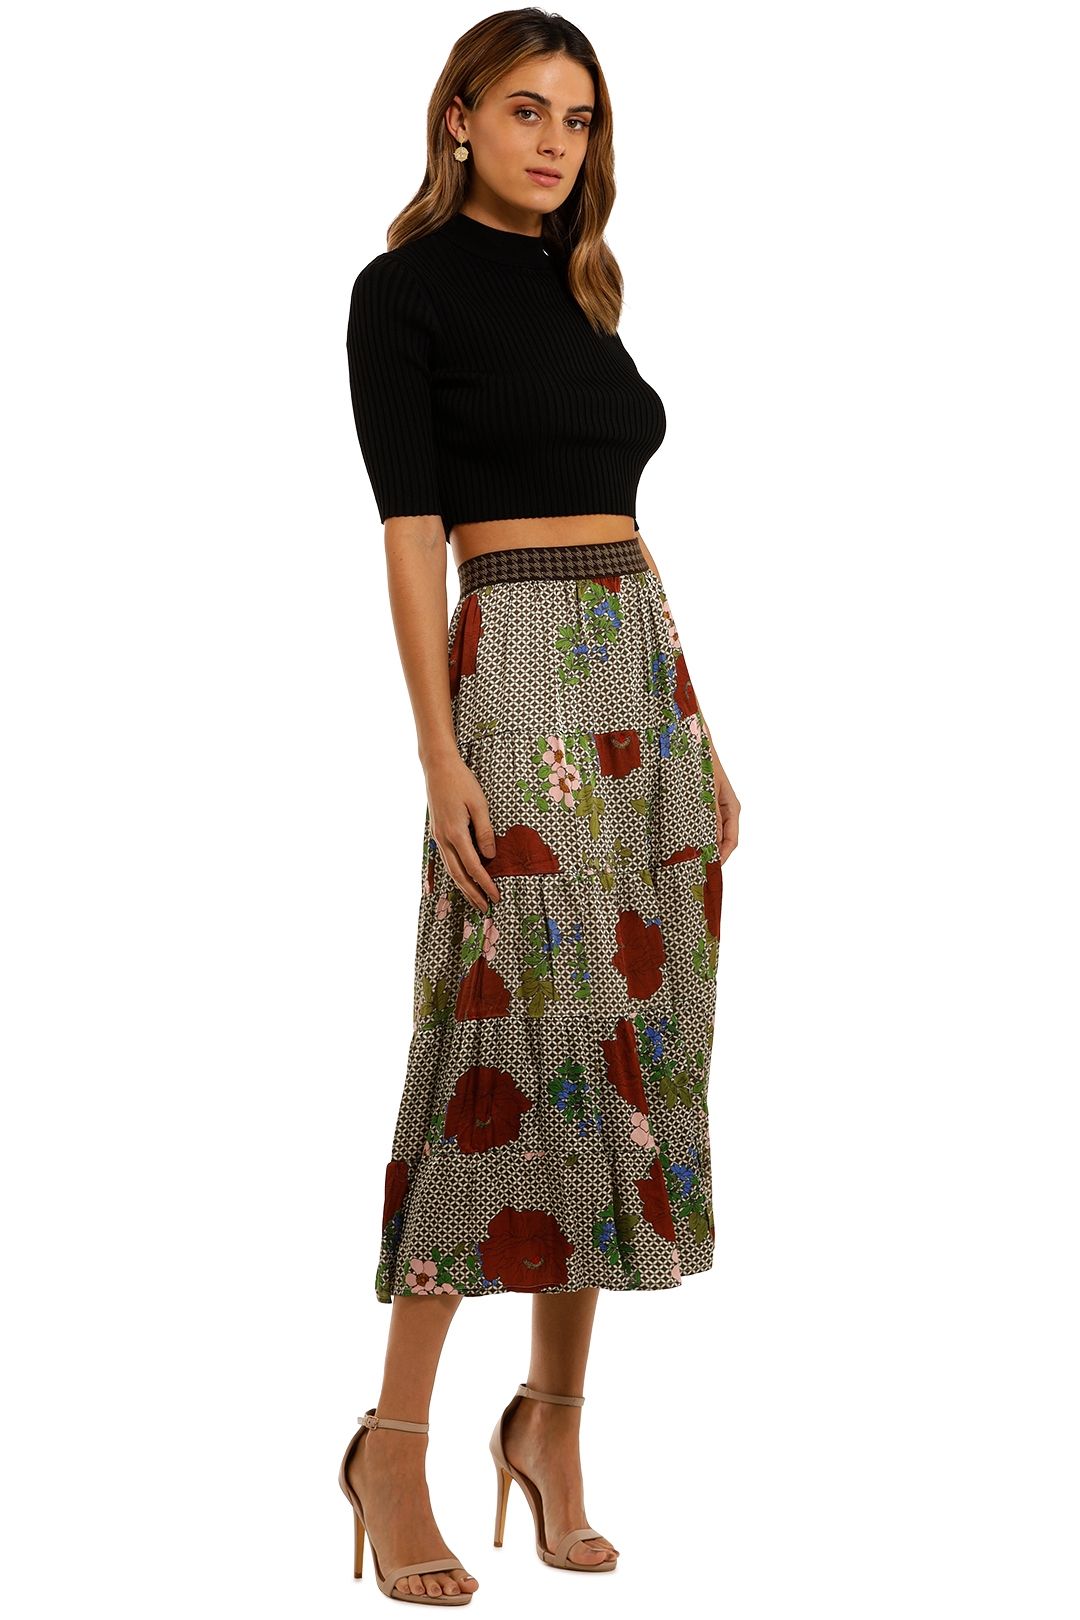 Buttercup Floral Skirt – Maxwell